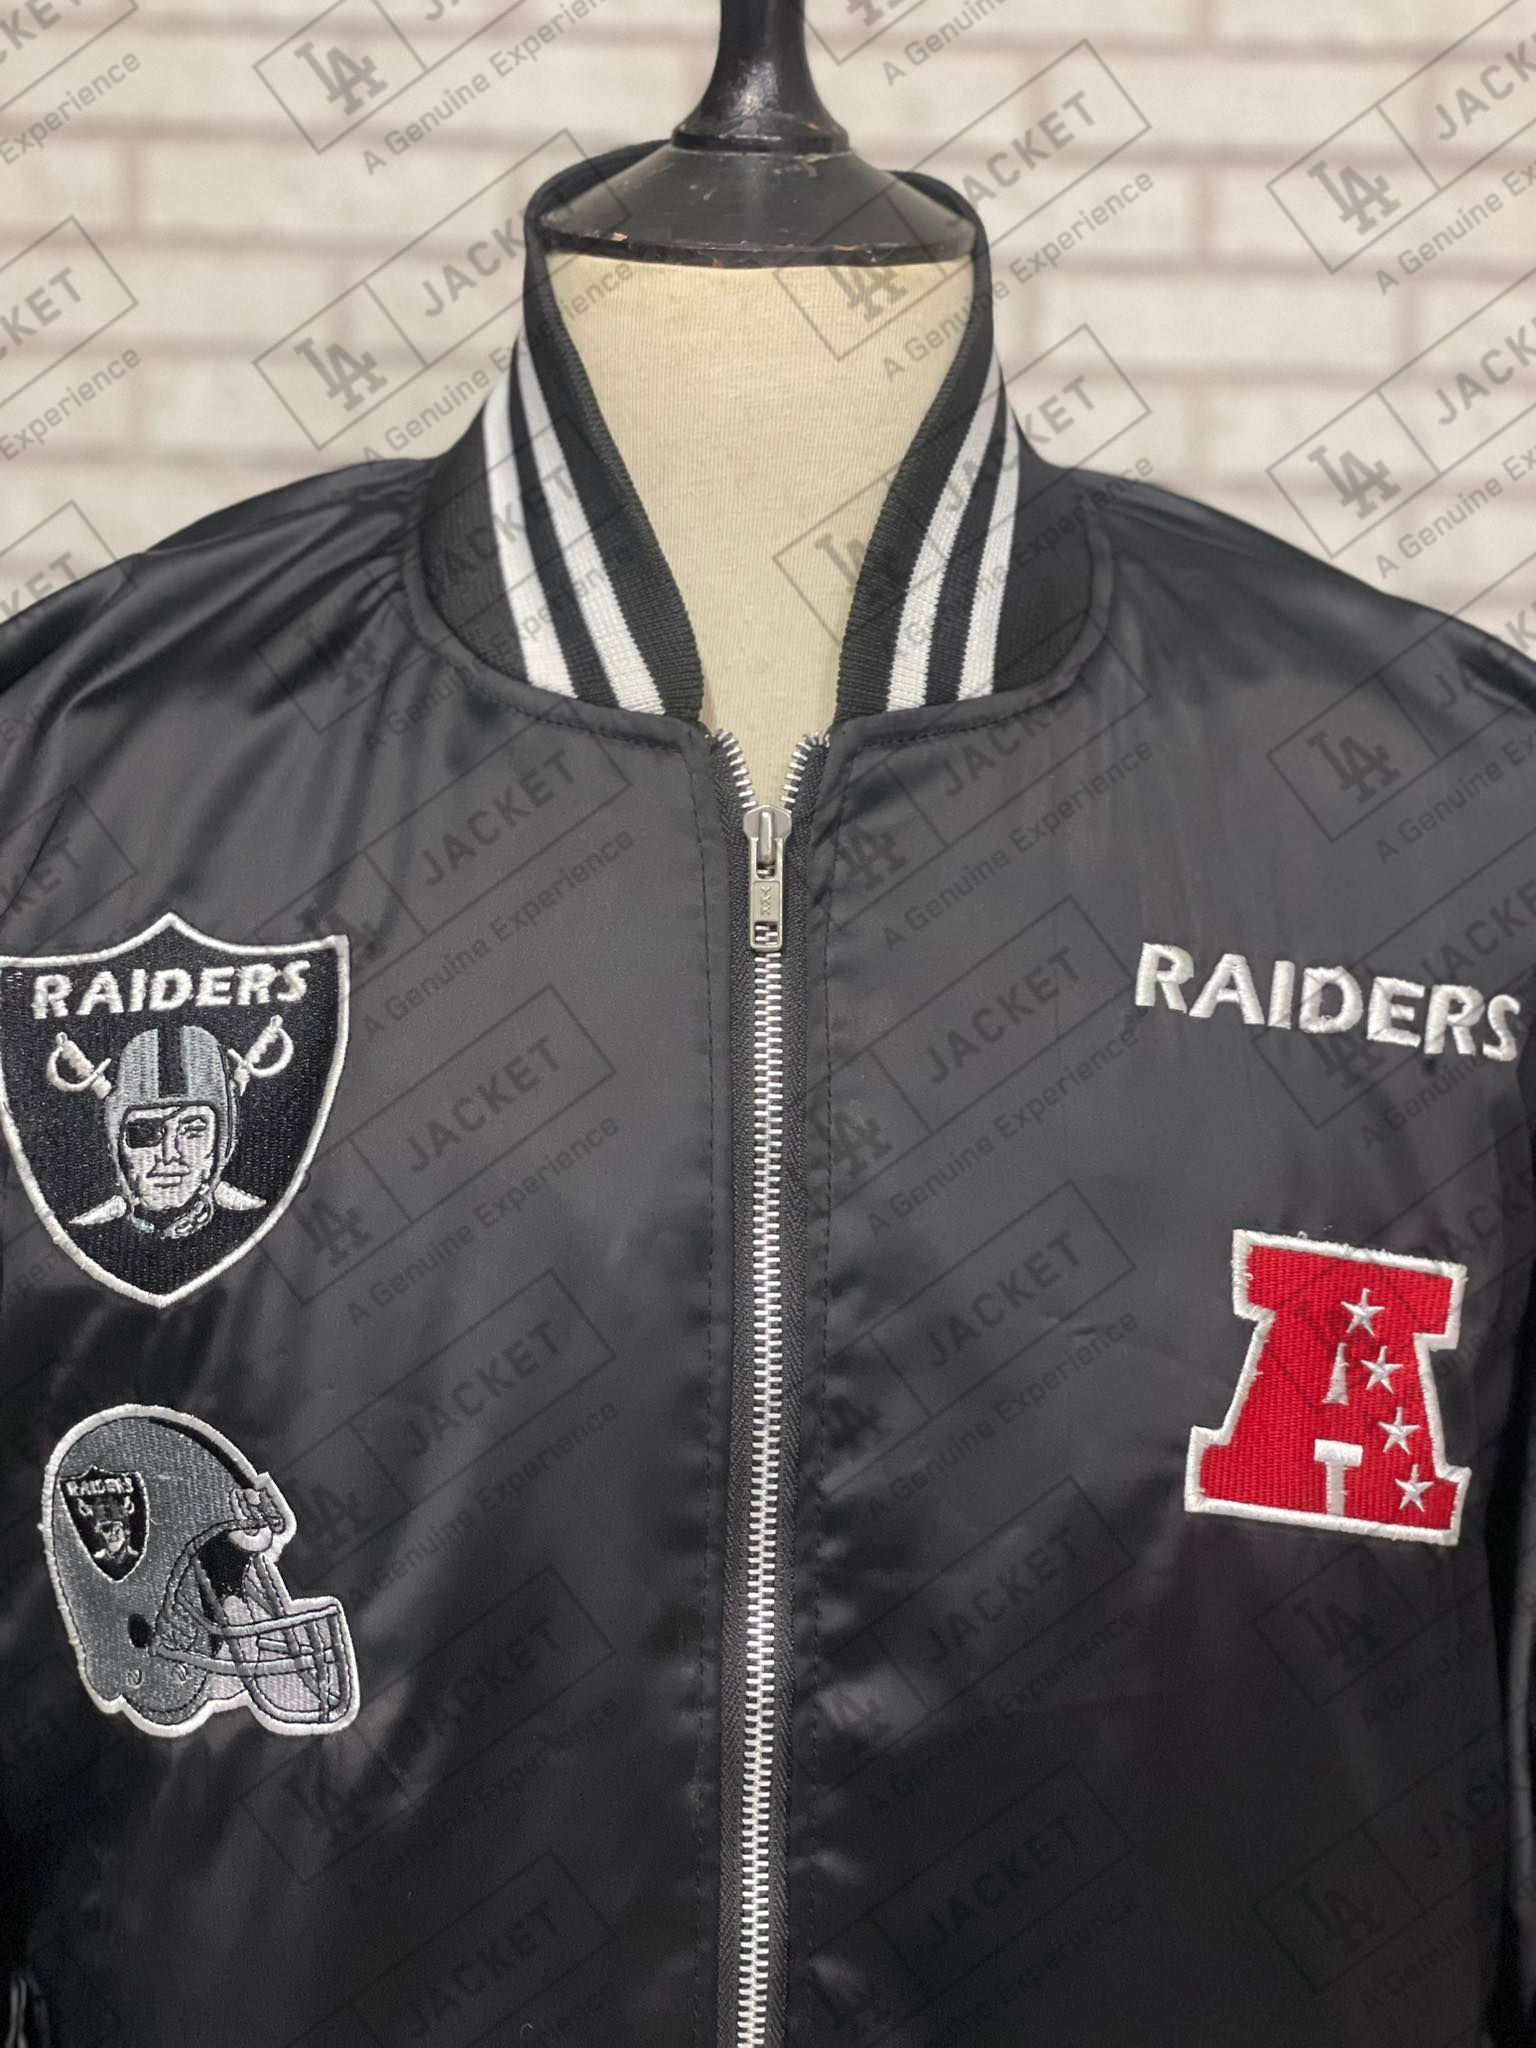 Las Vegas Raiders Varsity Jacket - Champions - NFL Letterman Jacket L